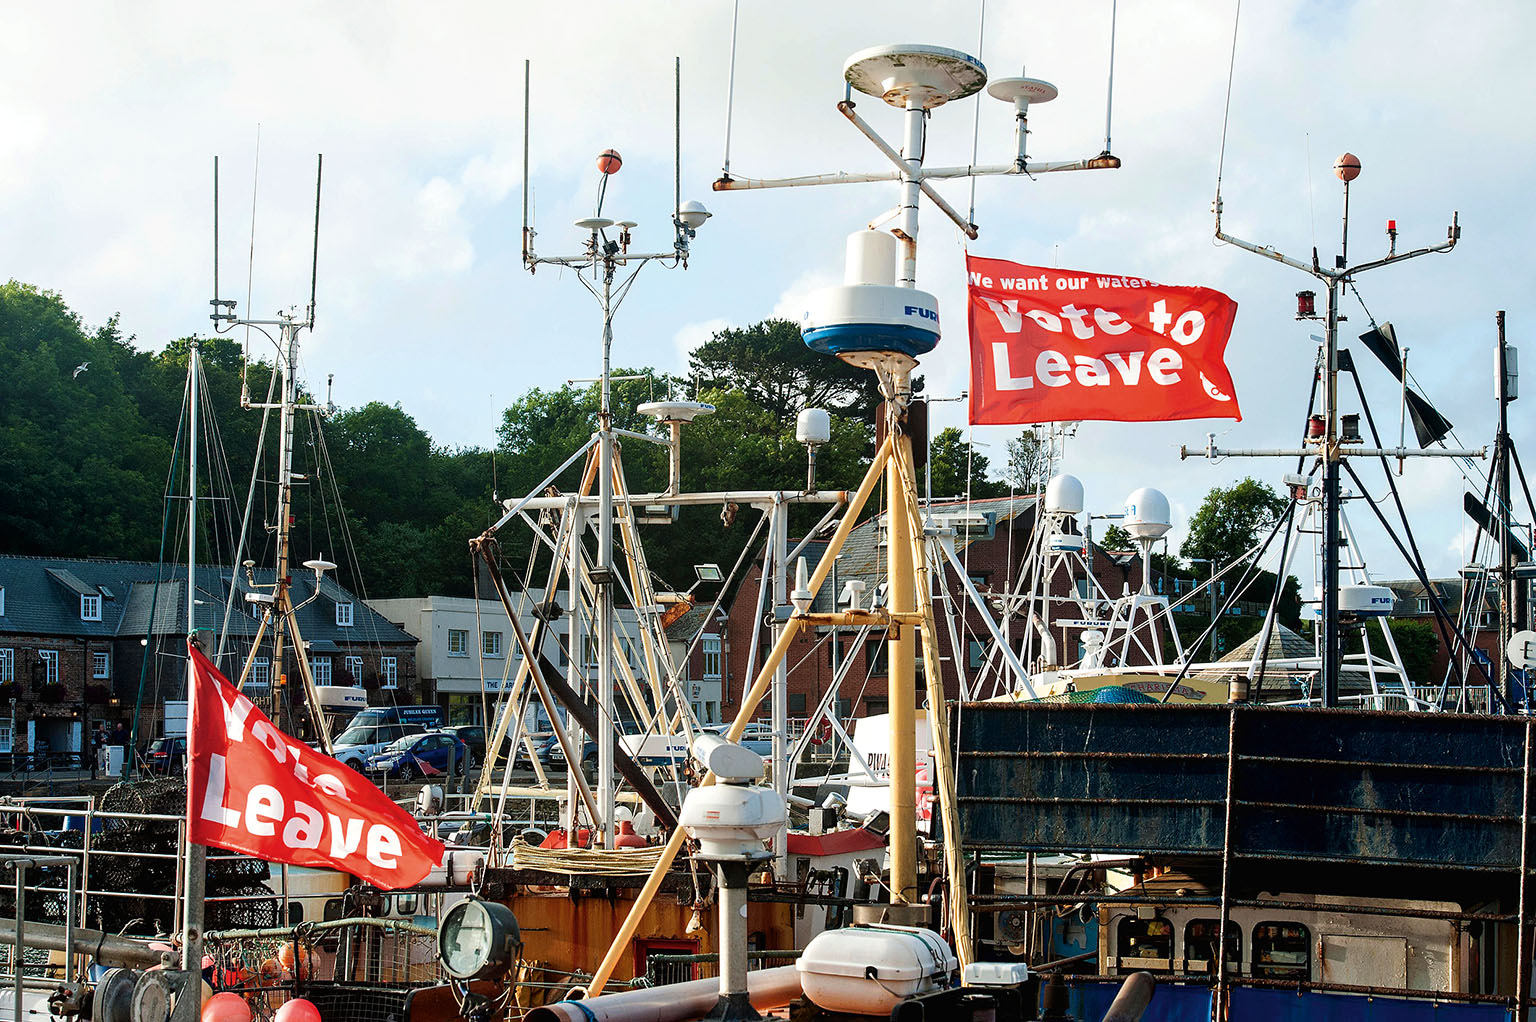 Britští rybáři doufají, že po brexitu se budou mít lépe. Vláda sice říká, že „převezme kontrolu nad vodami“, současně však dává najevo, že ani v budoucnu nebude možné lovit libovolné množství ryb.